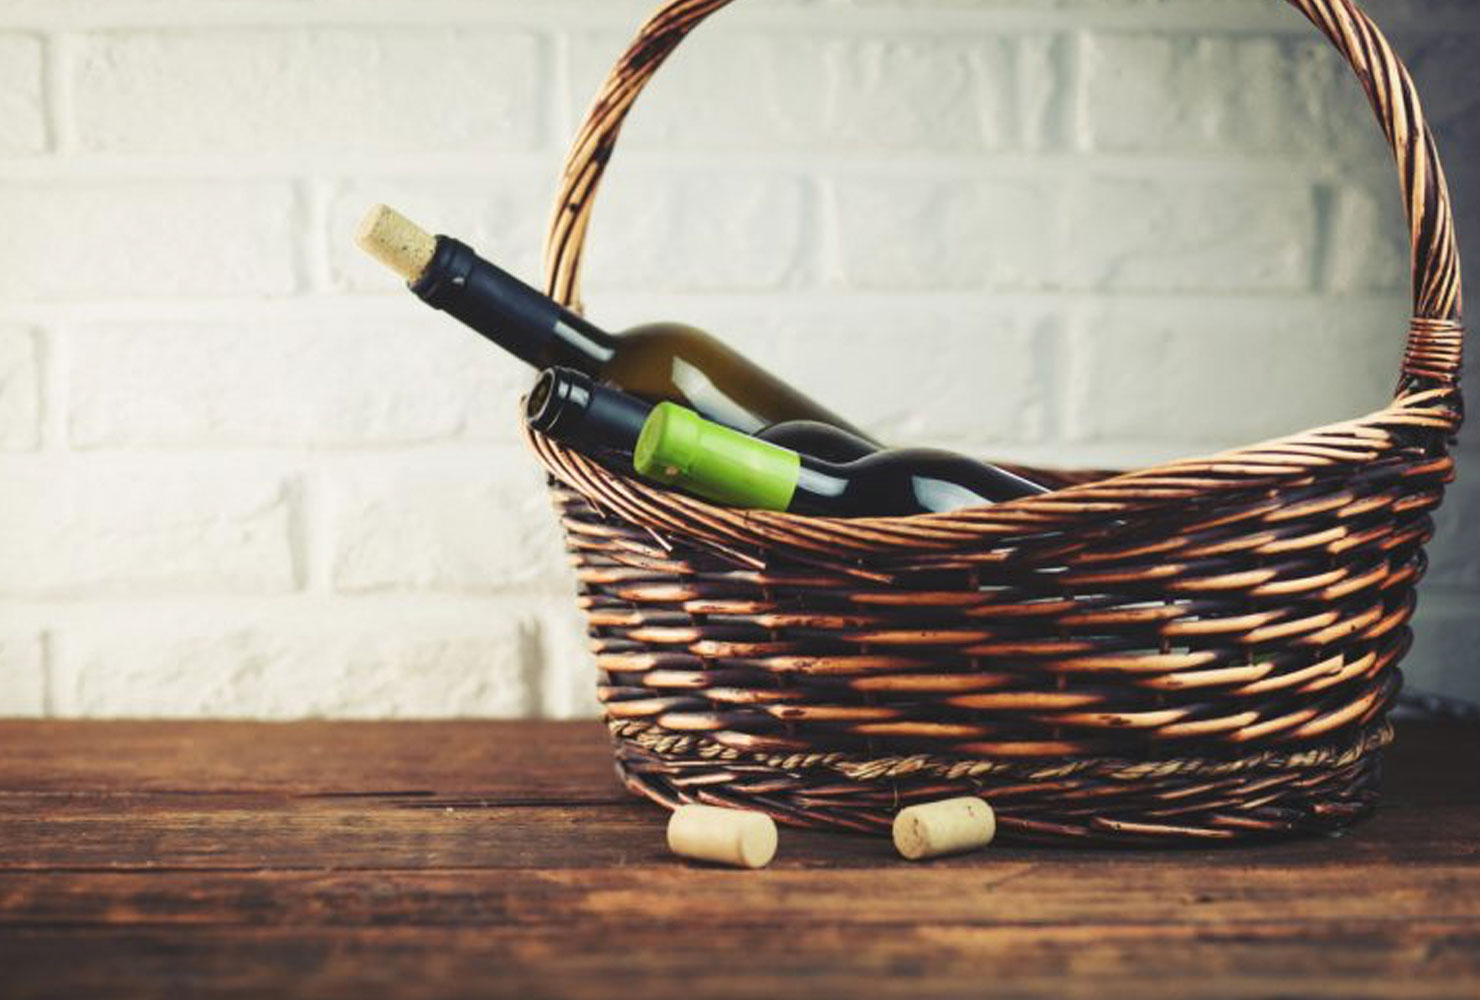 holiday gift basket ideas wine basket.